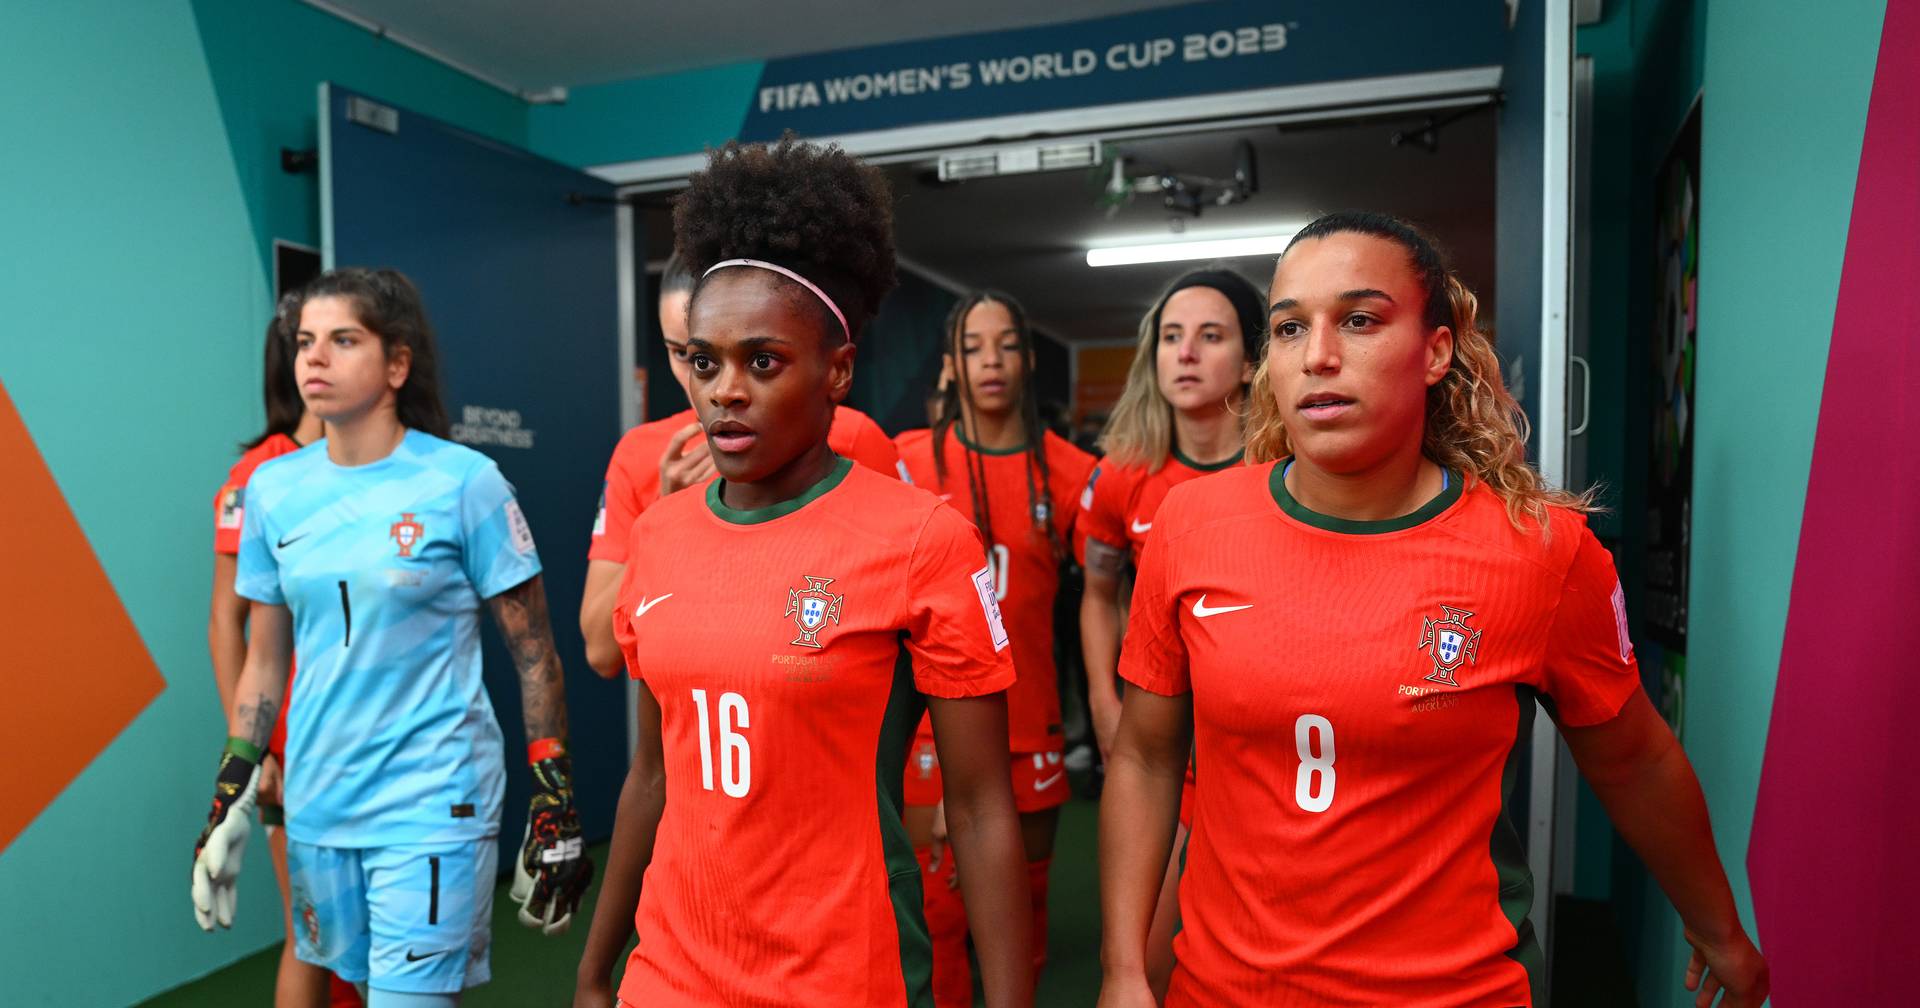 É oficial: RTP vai transmitir os jogos de Portugal no Mundial de futebol  feminino